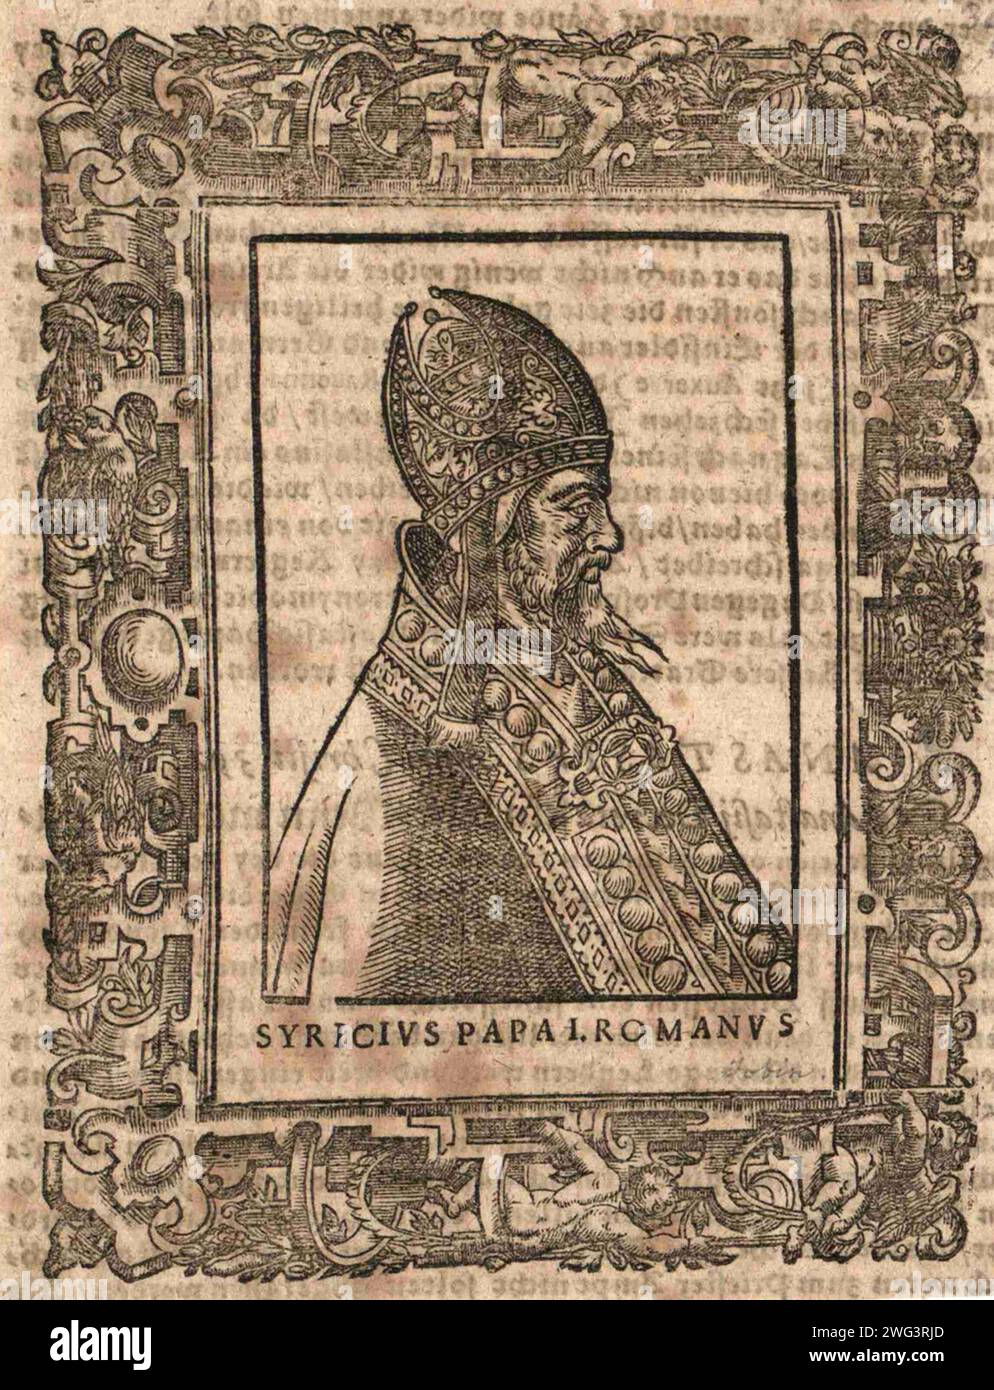 Ein Kupferstich von Papst Marcellus I. aus dem 16. Jahrhundert, der von 308 bis 309 päpstlicher Vater war. Er war der 30. Papst. Stockfoto